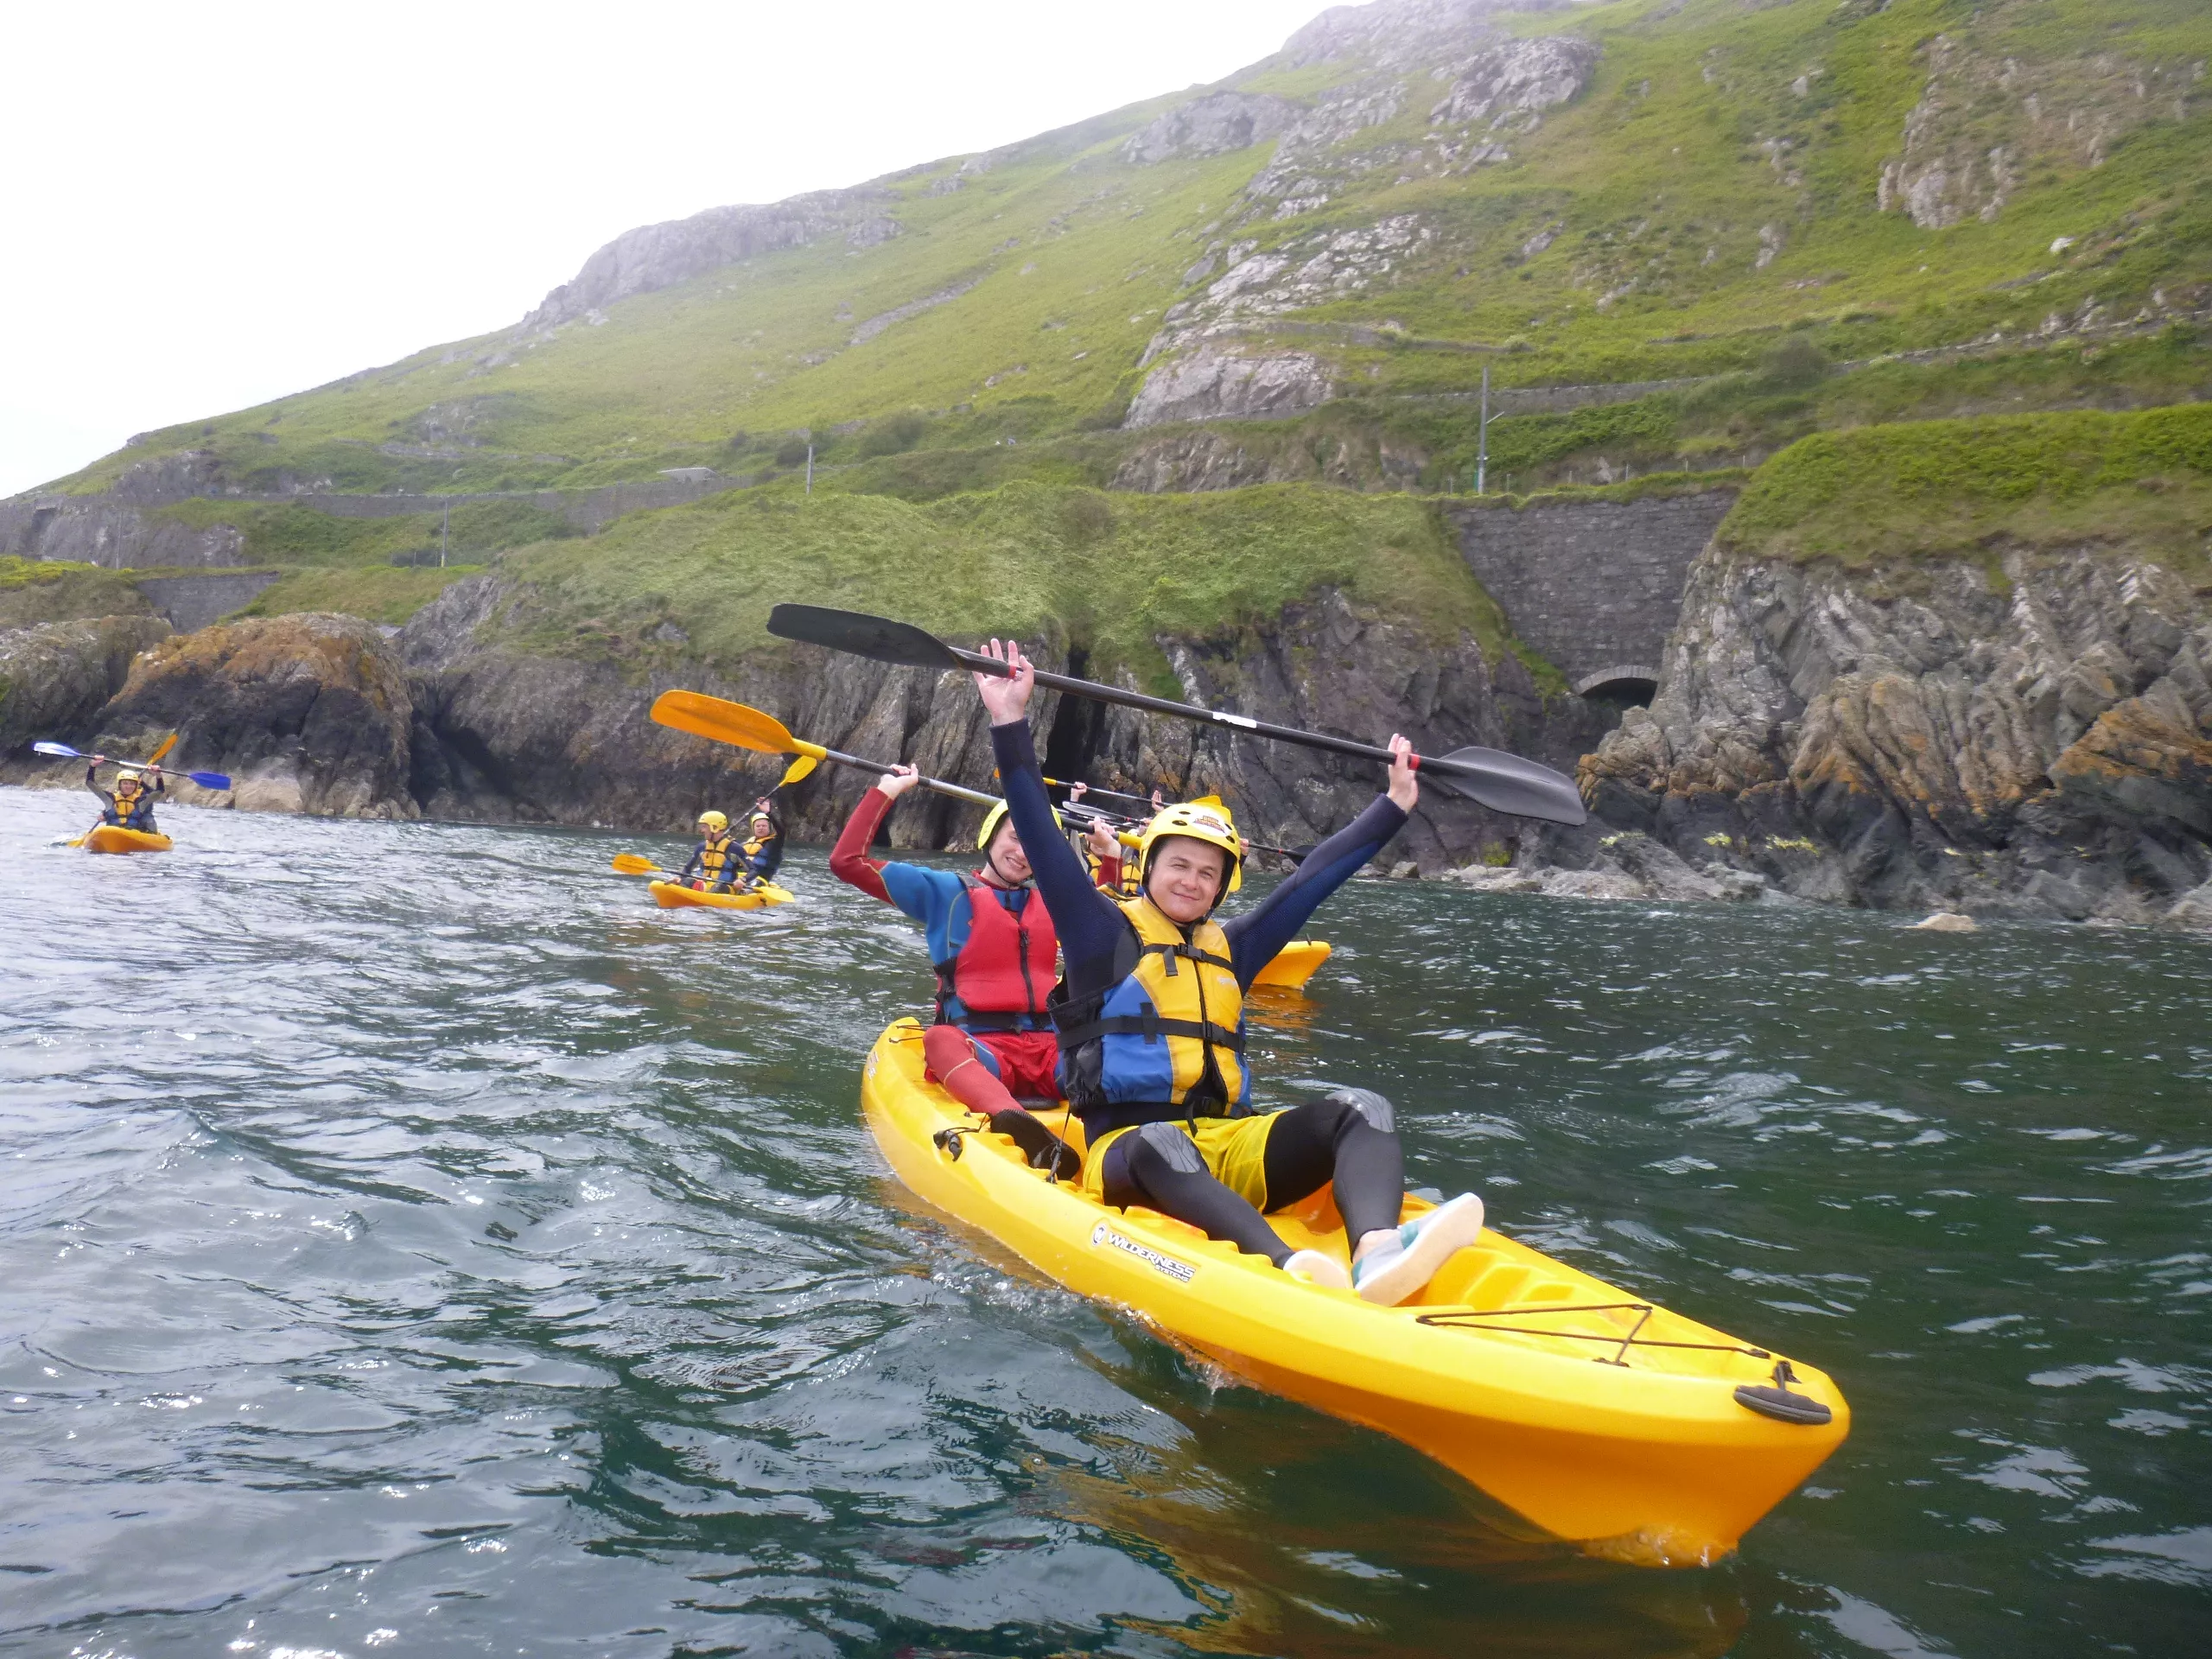 Wicklow Kayaking in Ireland, Europe | Kayaking & Canoeing - Rated 0.9